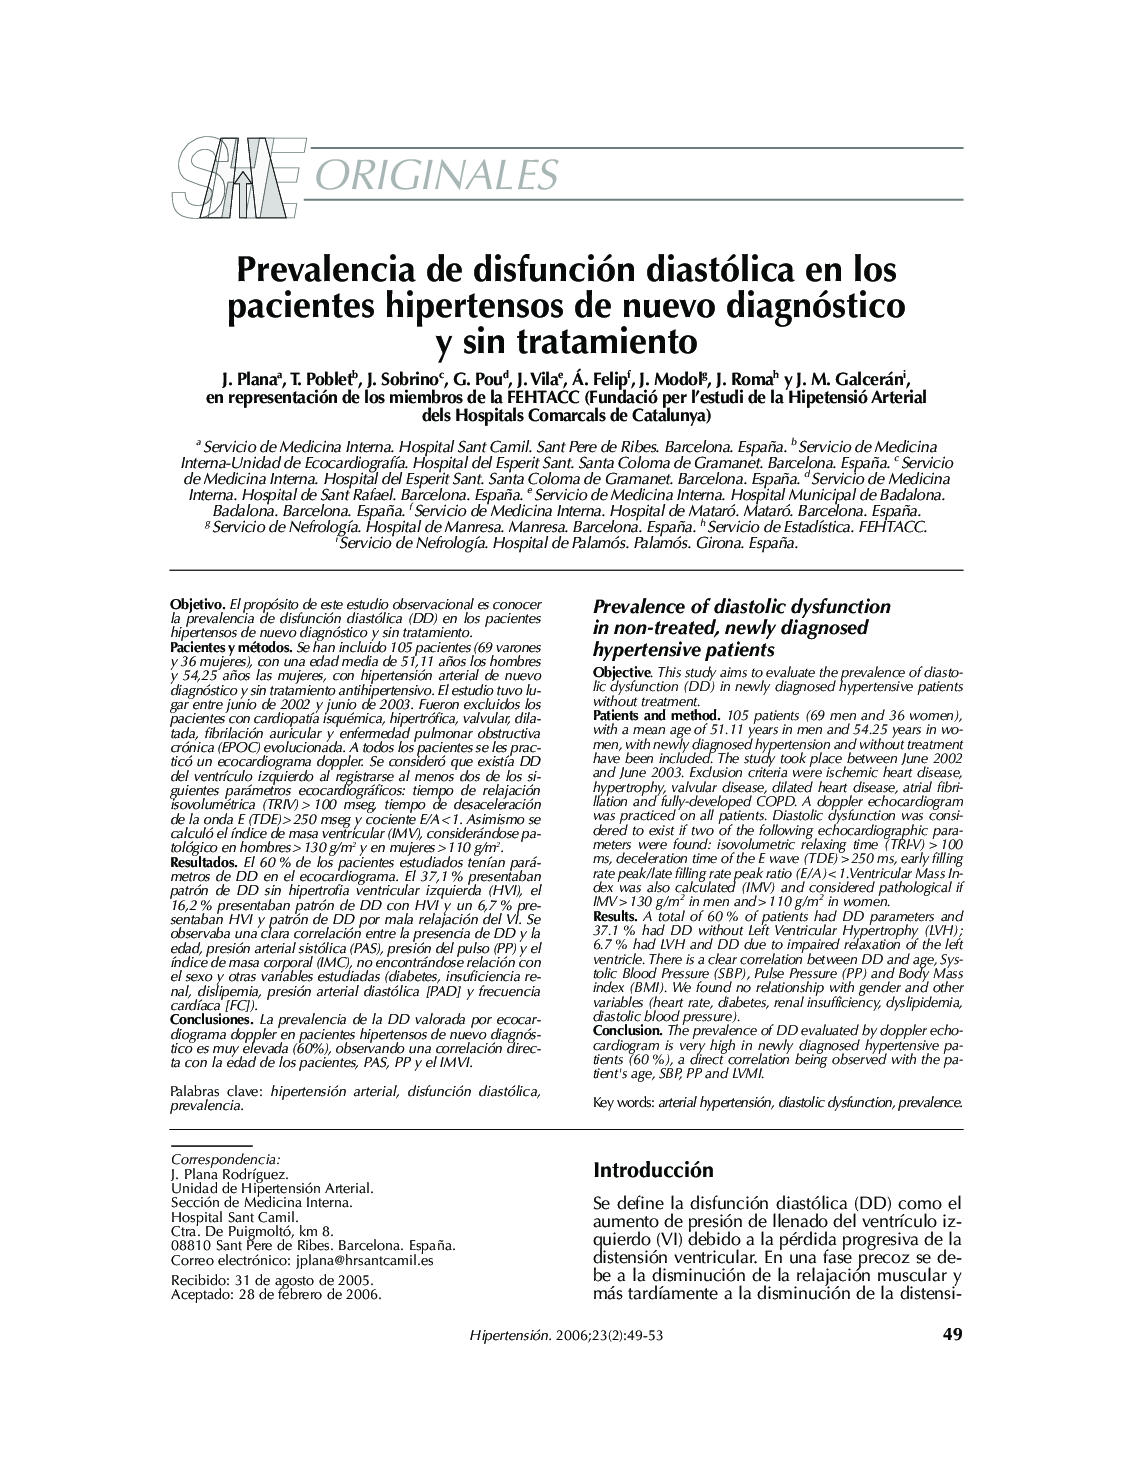 Prevalencia de disfunción diastólica en los pacientes hipertensos de nuevo diagnóstico y sin tratamiento